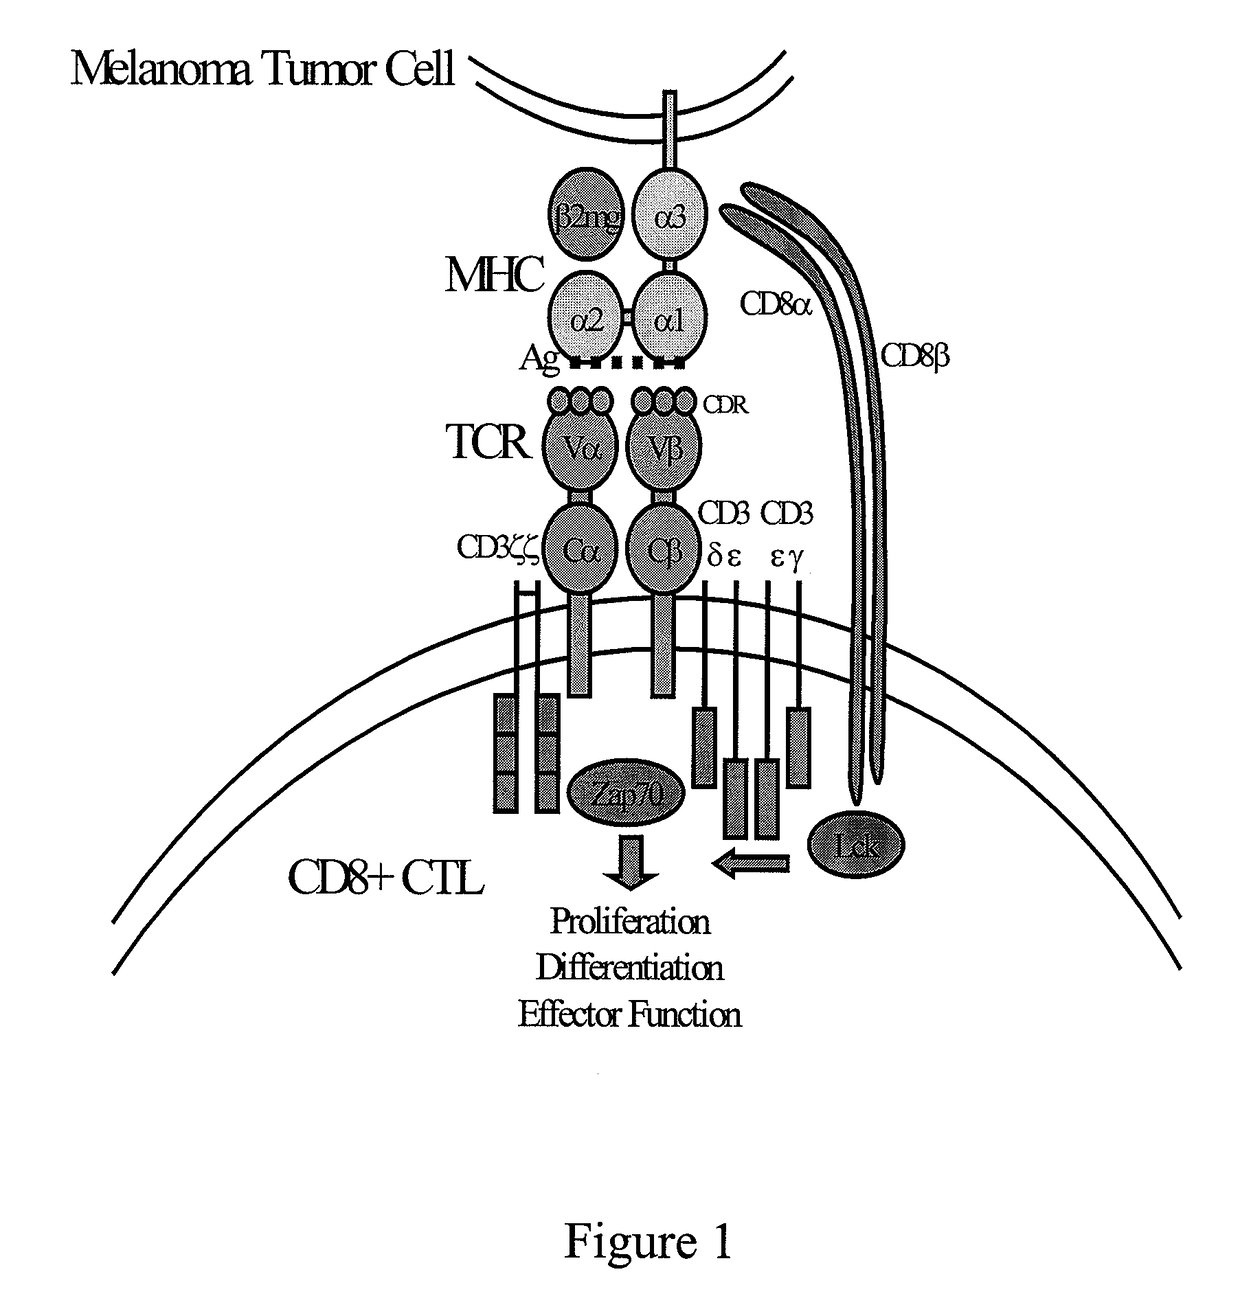 MART-1 T cell receptors